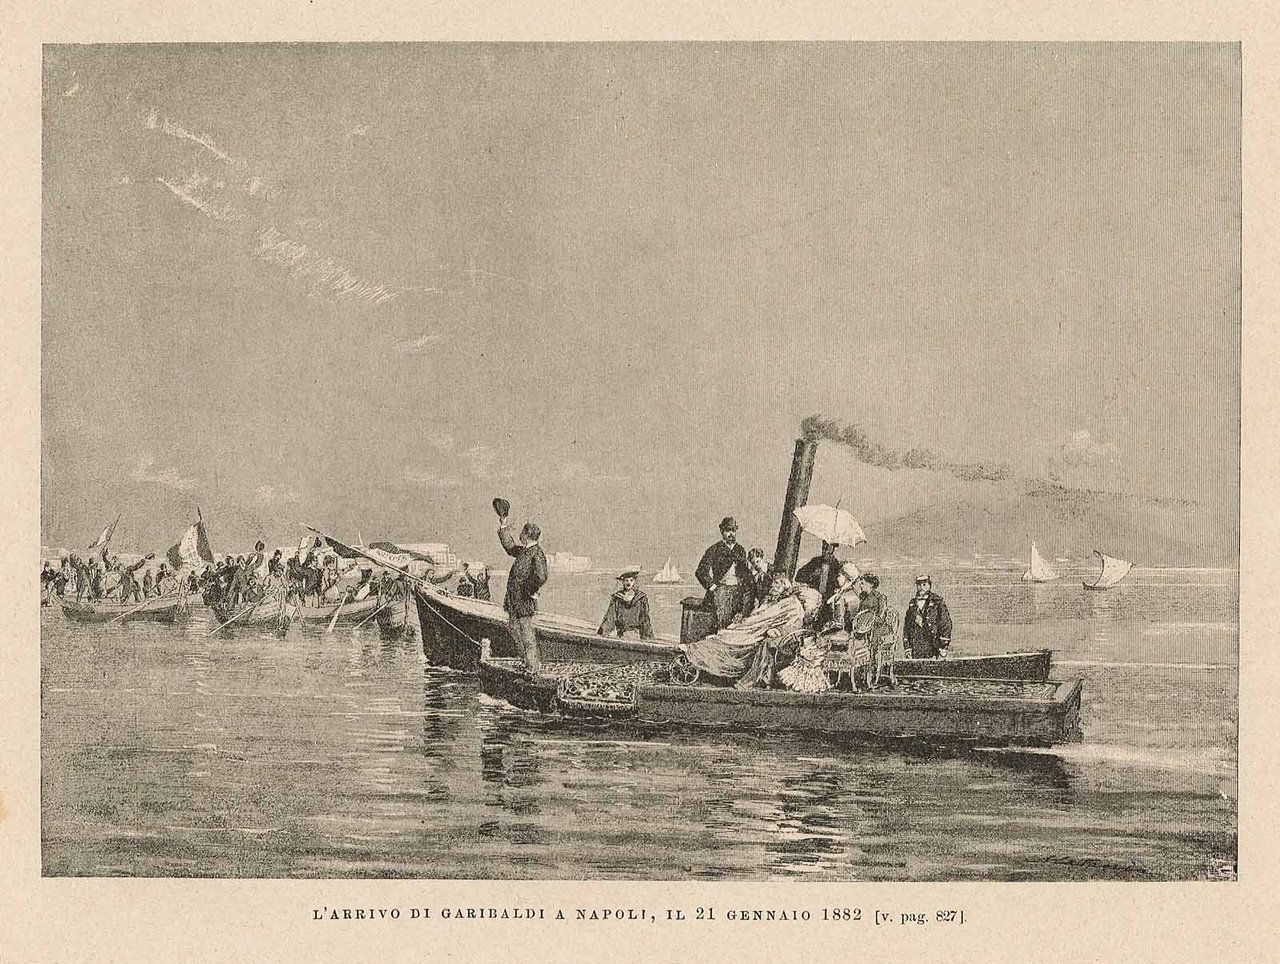 L'arrivo di Garibaldi a Napoli, il 21 gennaio 1882